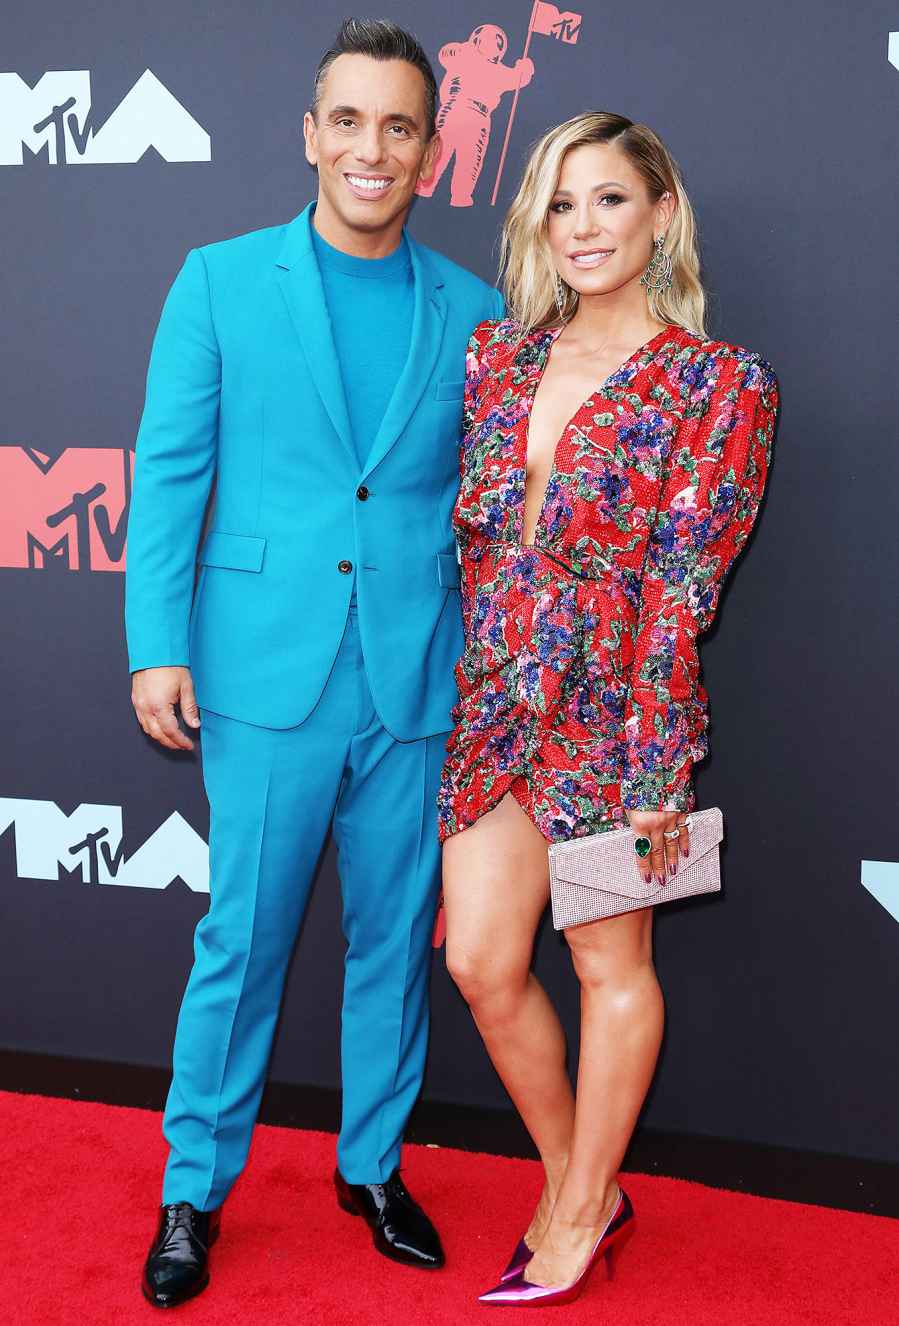 Sebastian Maniscalco and Lana Gomez Hottest Couples at the VMAs 2019